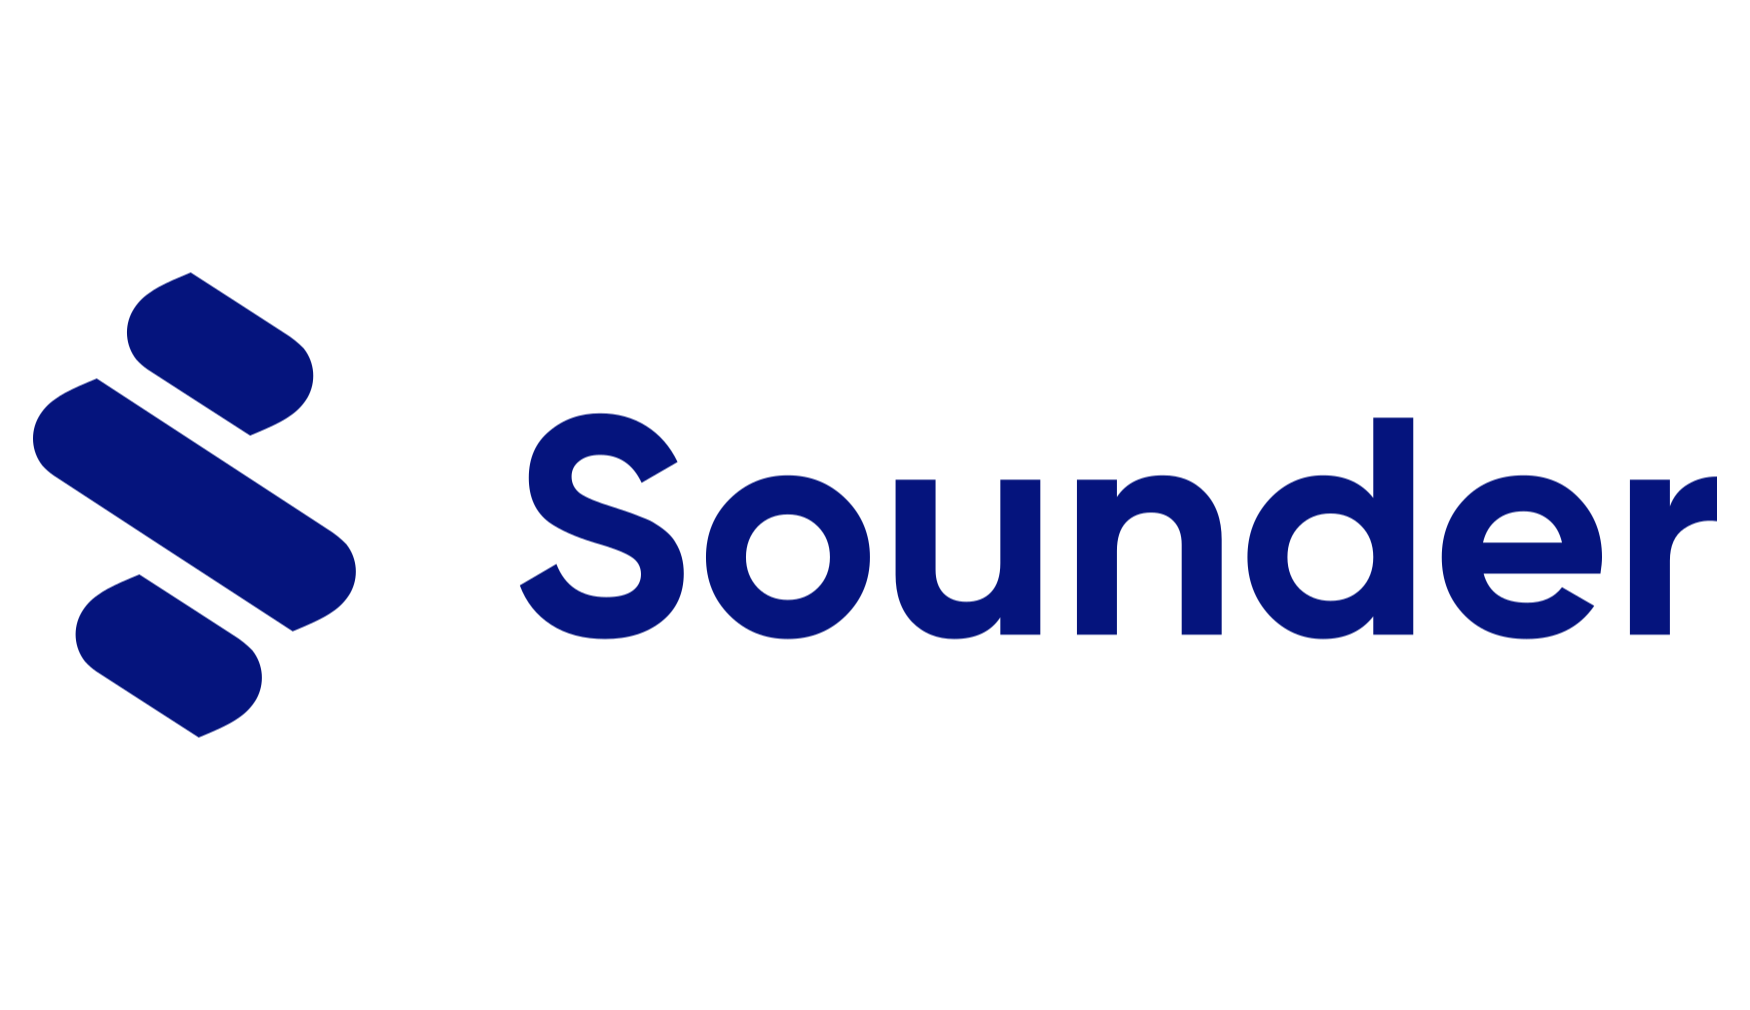 Sounder-logo.png